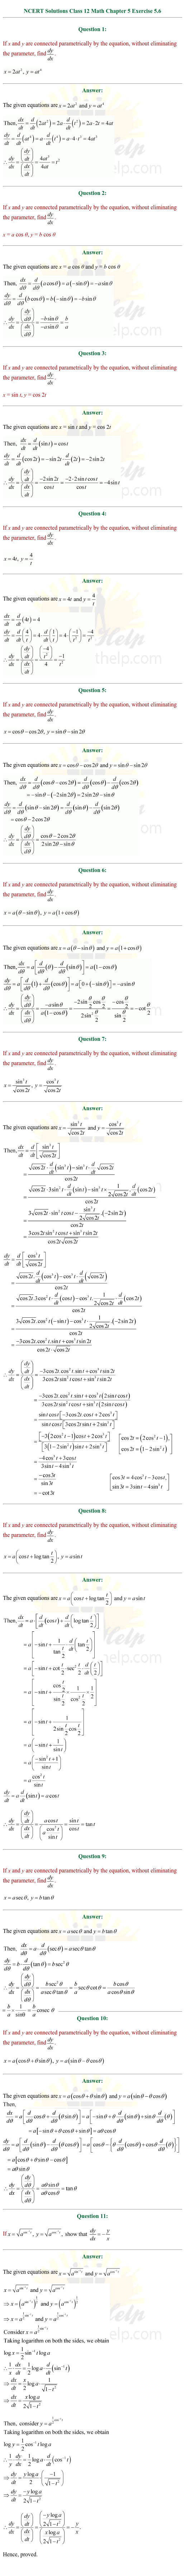 ex.5.6 Class 12 Math Chapter 5 ncert solutions